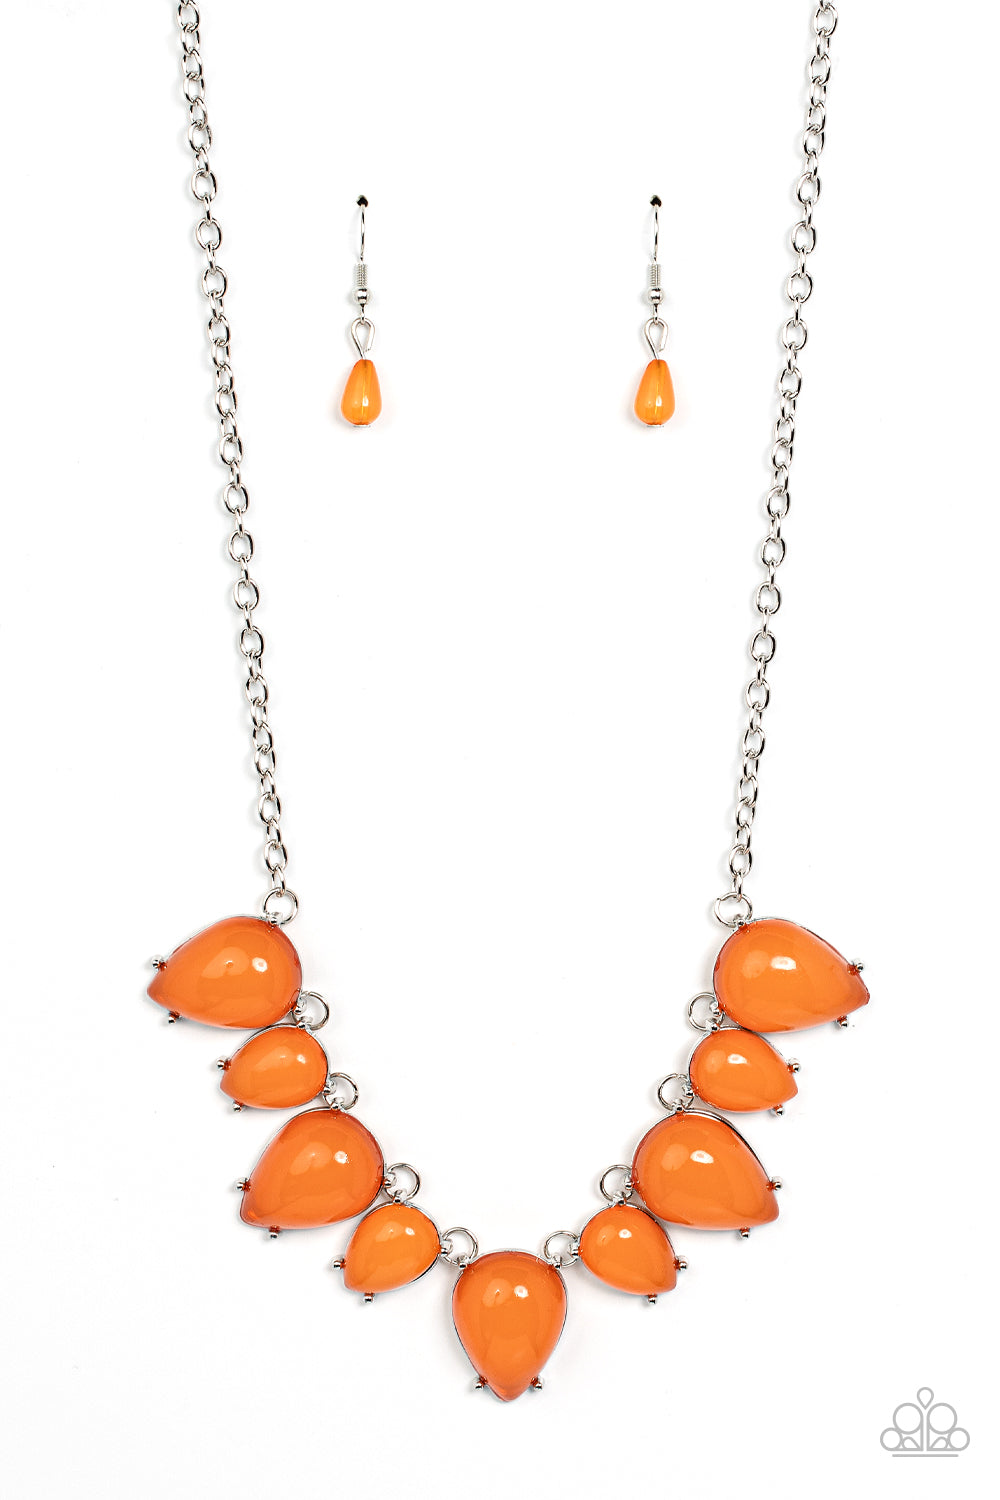 Pampered Poolside - Orange necklace